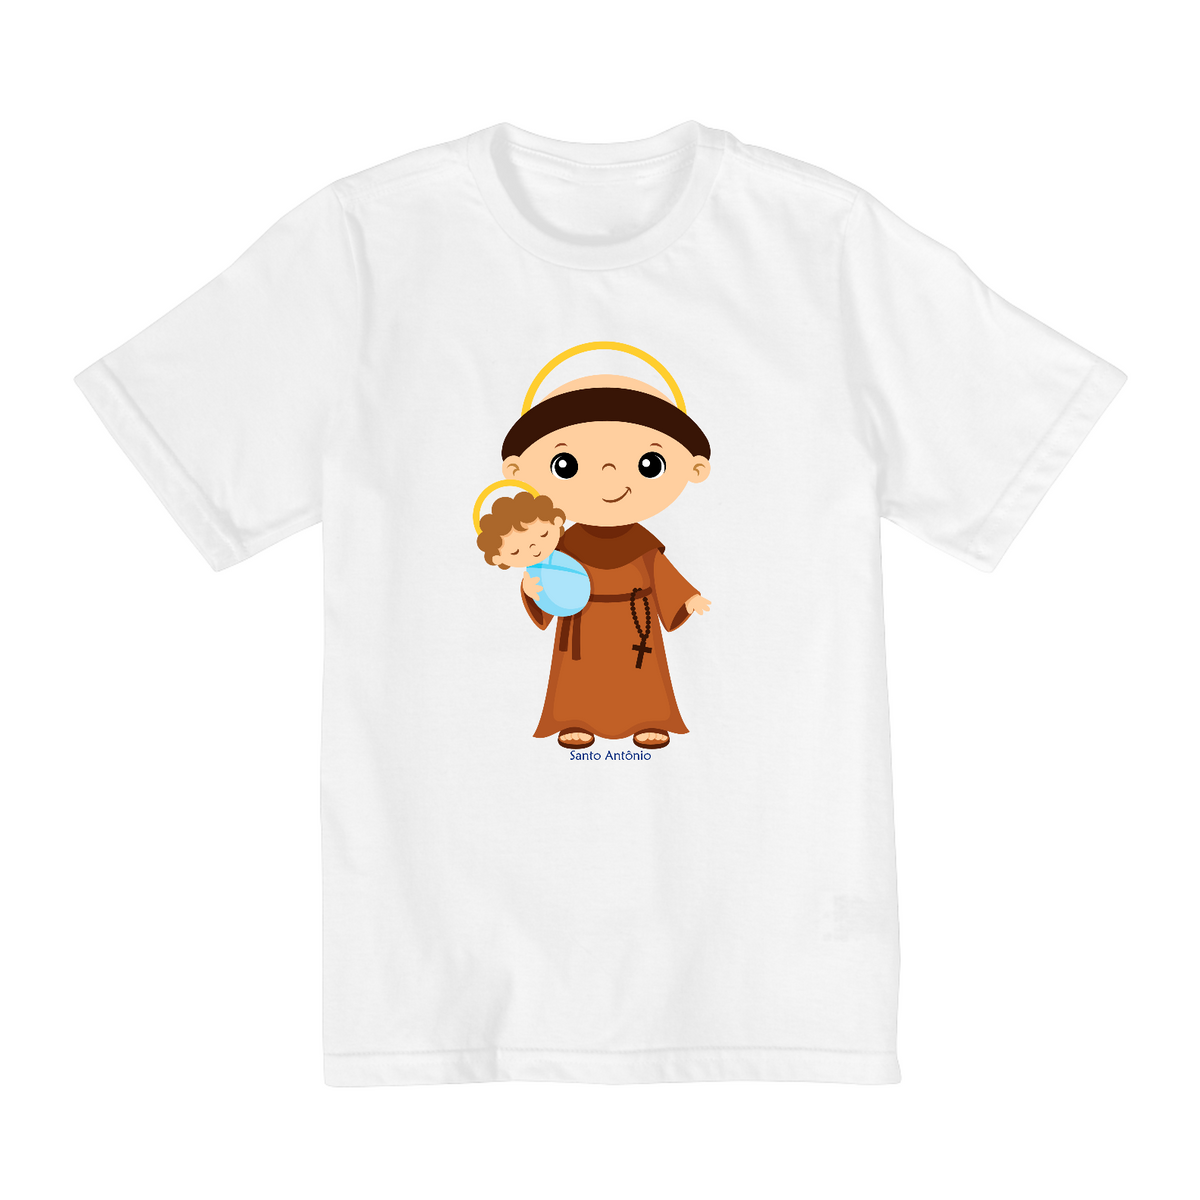 Nome do produto: Camiseta Infantil de Santo Antônio